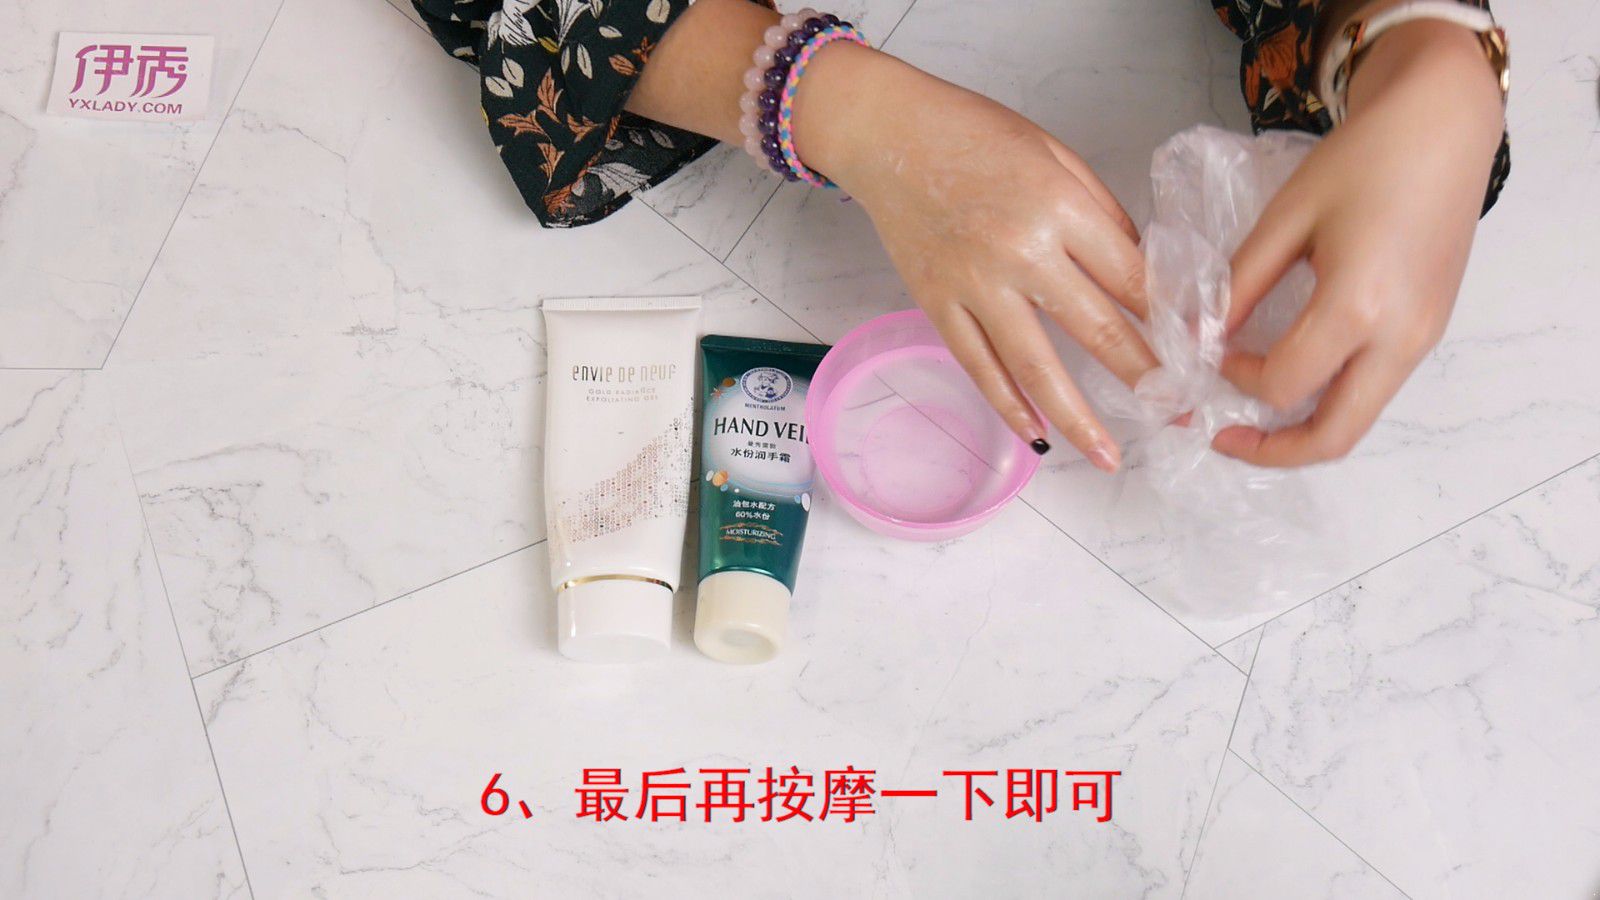 手是女人的第二张脸 自制手膜护手效果杠杠的_伊秀视频|yxlady.com